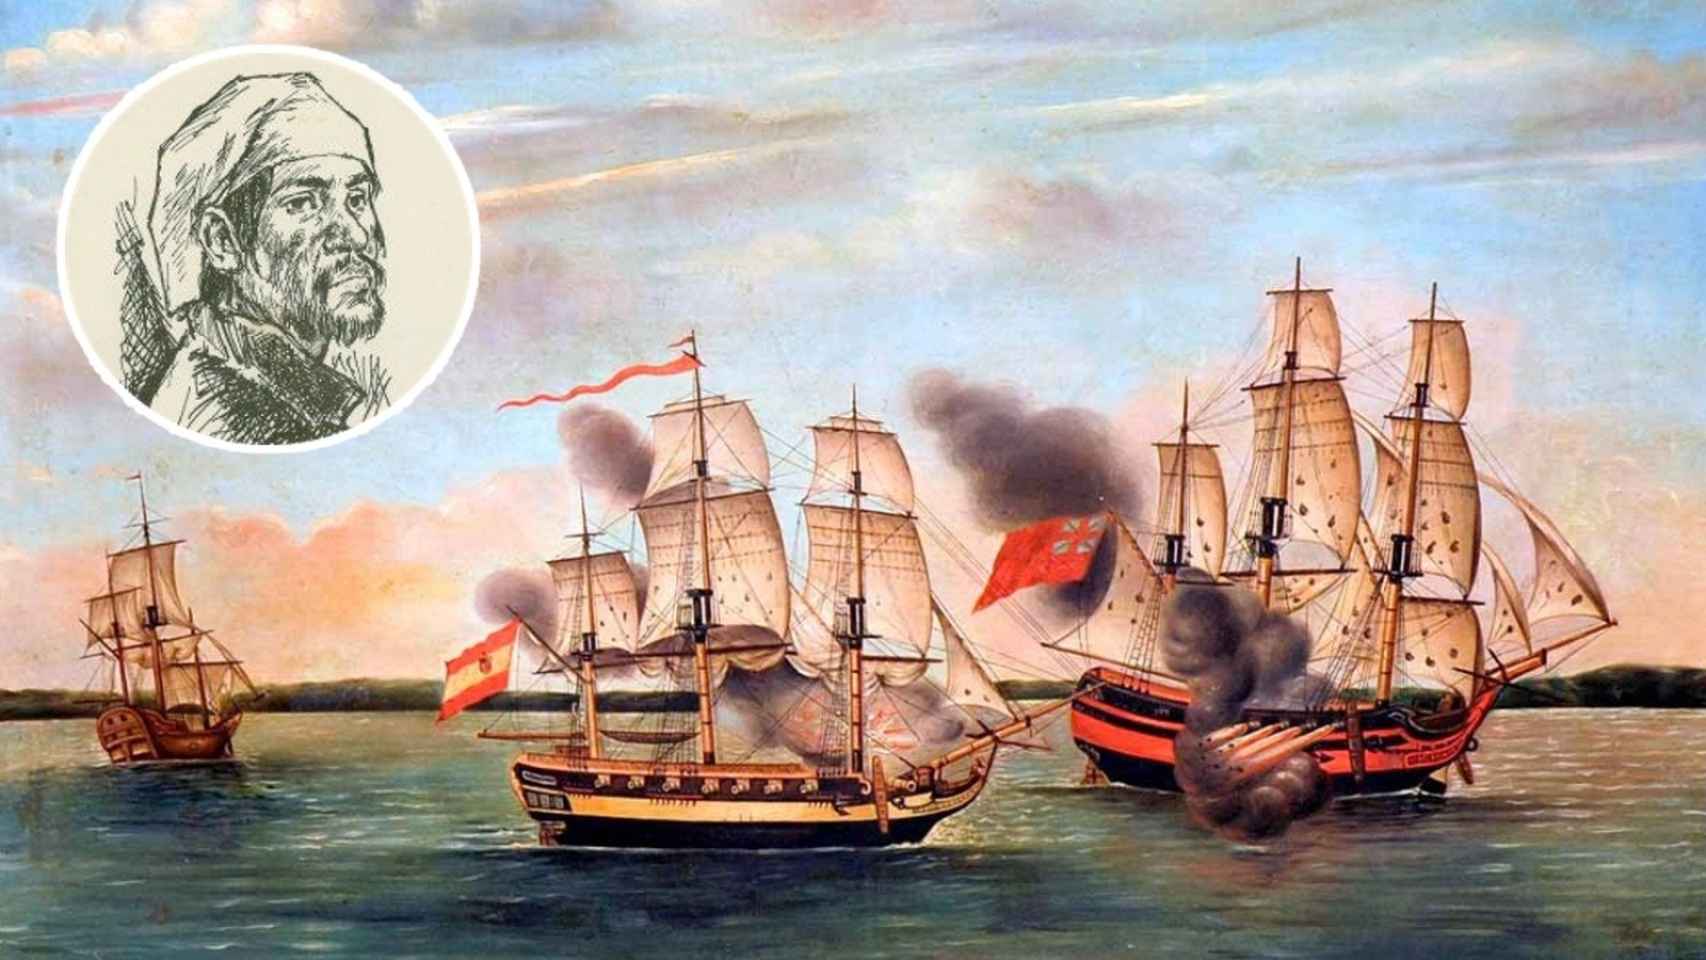 Un garabato de época del pirata mestizo Miguel Enríquez junto al cuadro de una batalla naval contra corsarios ingleses.